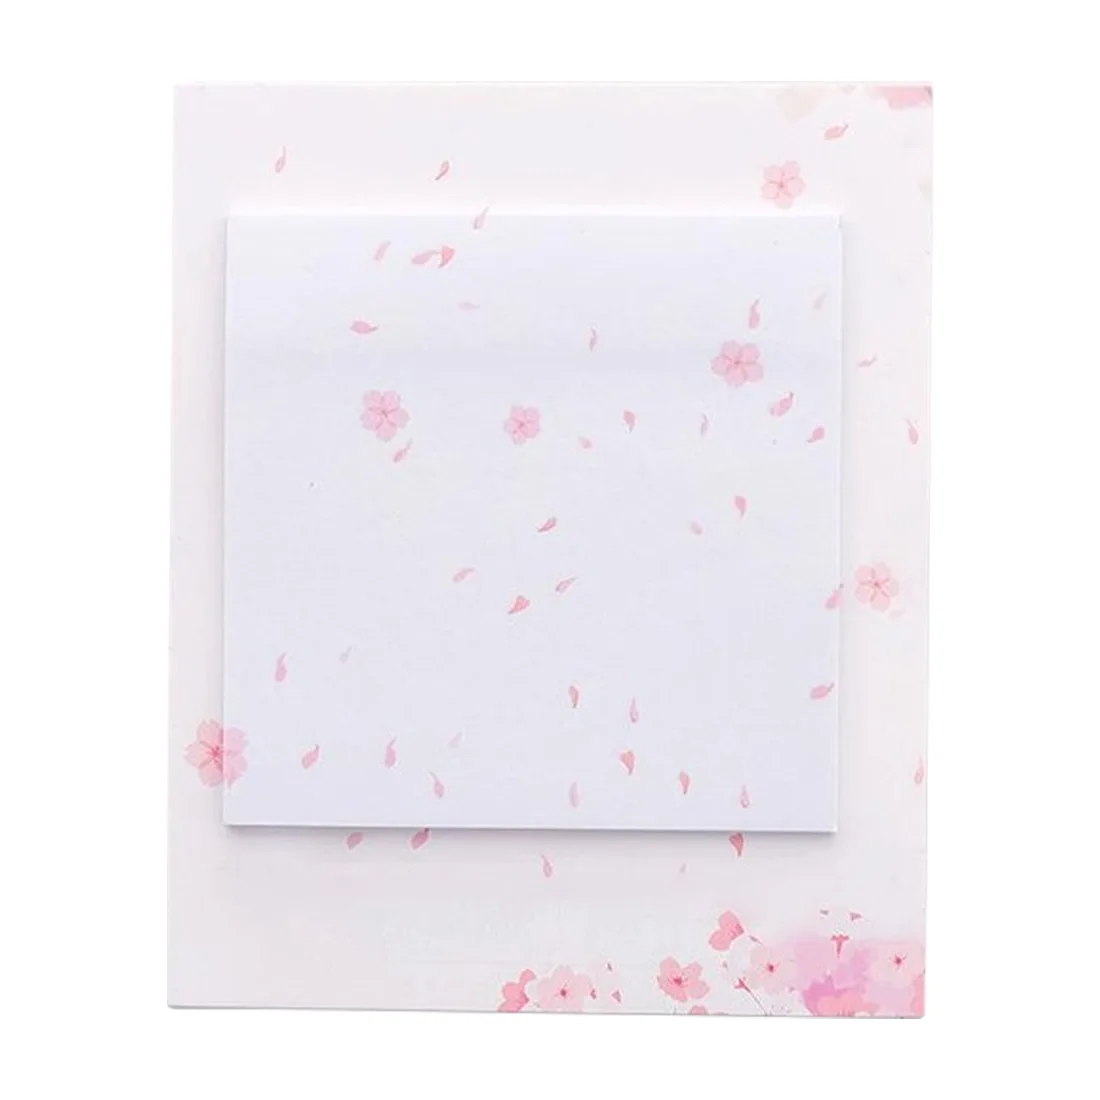 Лазерный Memopad японский сакура самоклеющиеся заметки самоклеющиеся липкие заметки милые блокноты размещенные блокноты наклейки бумага - Цвет: Sakura dancing